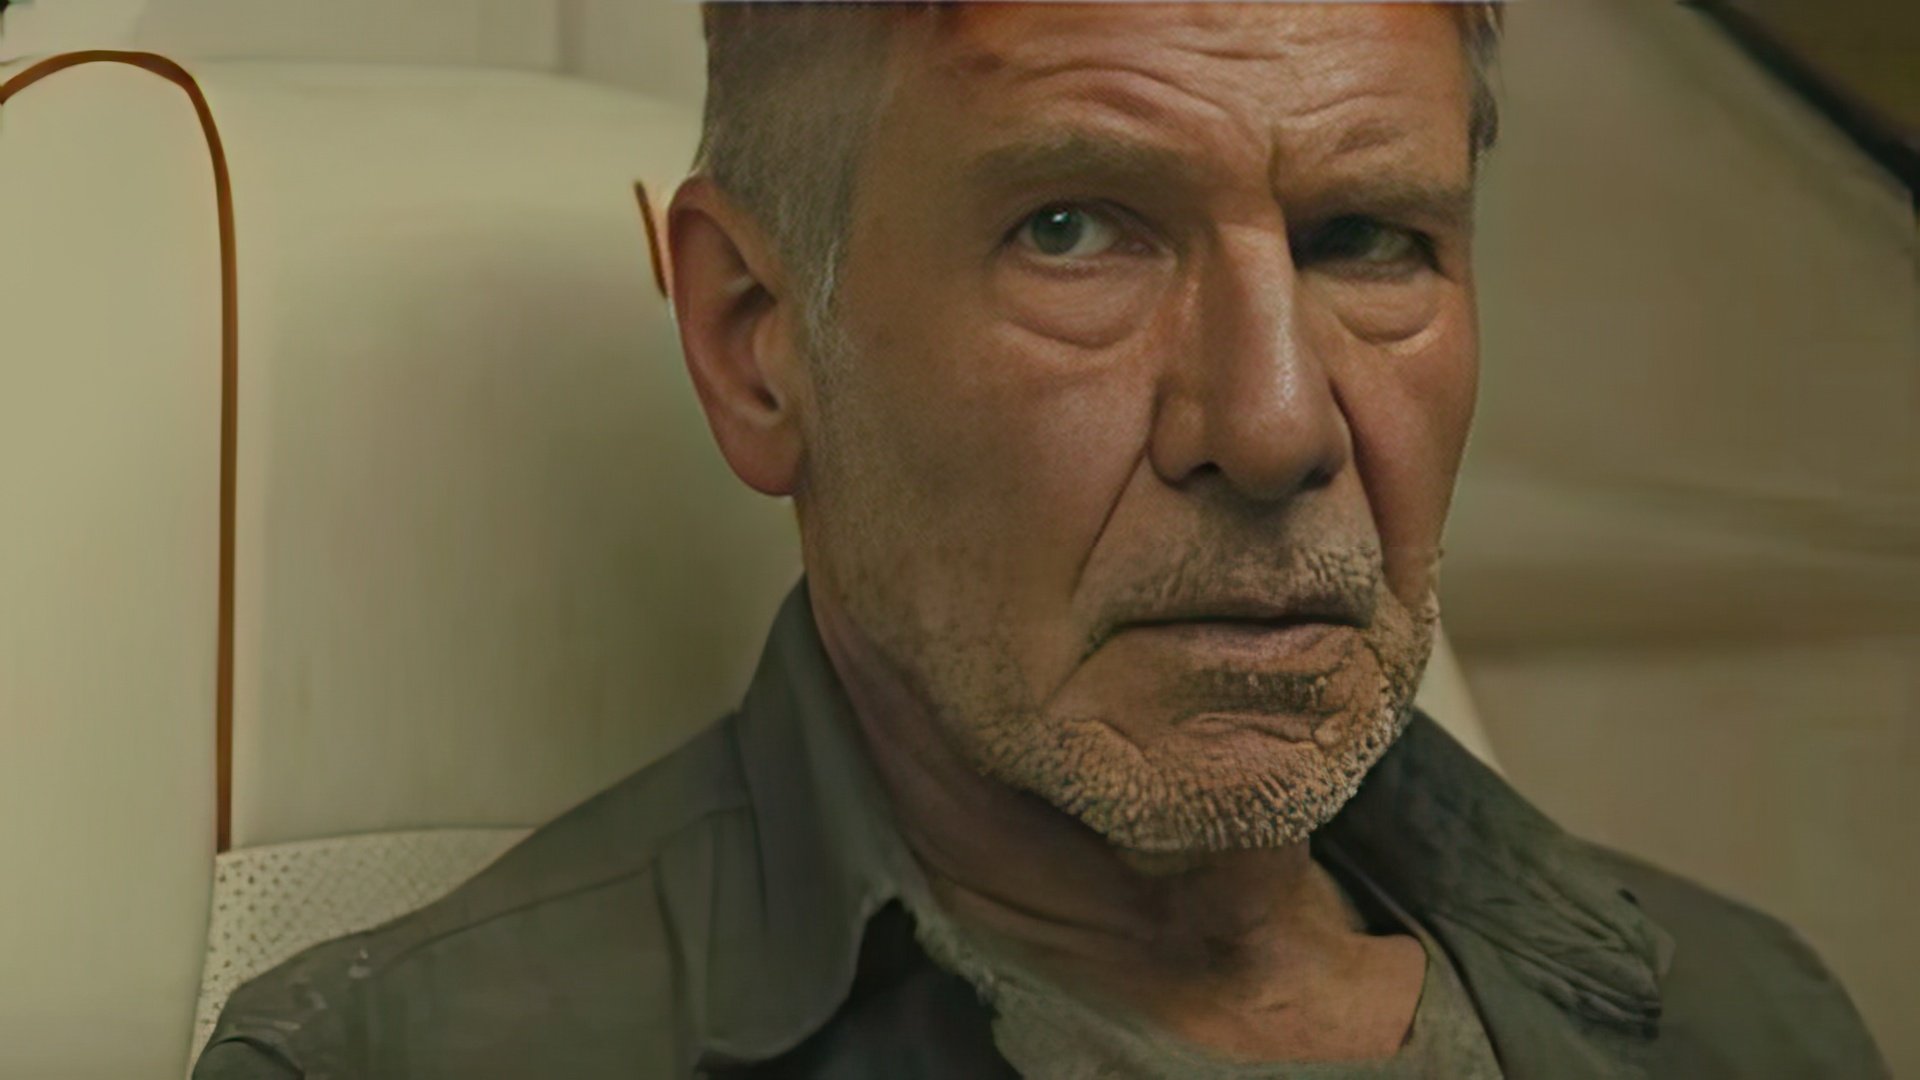 Blade Runner 2049: Harrison Ford again plays Rick Deckard